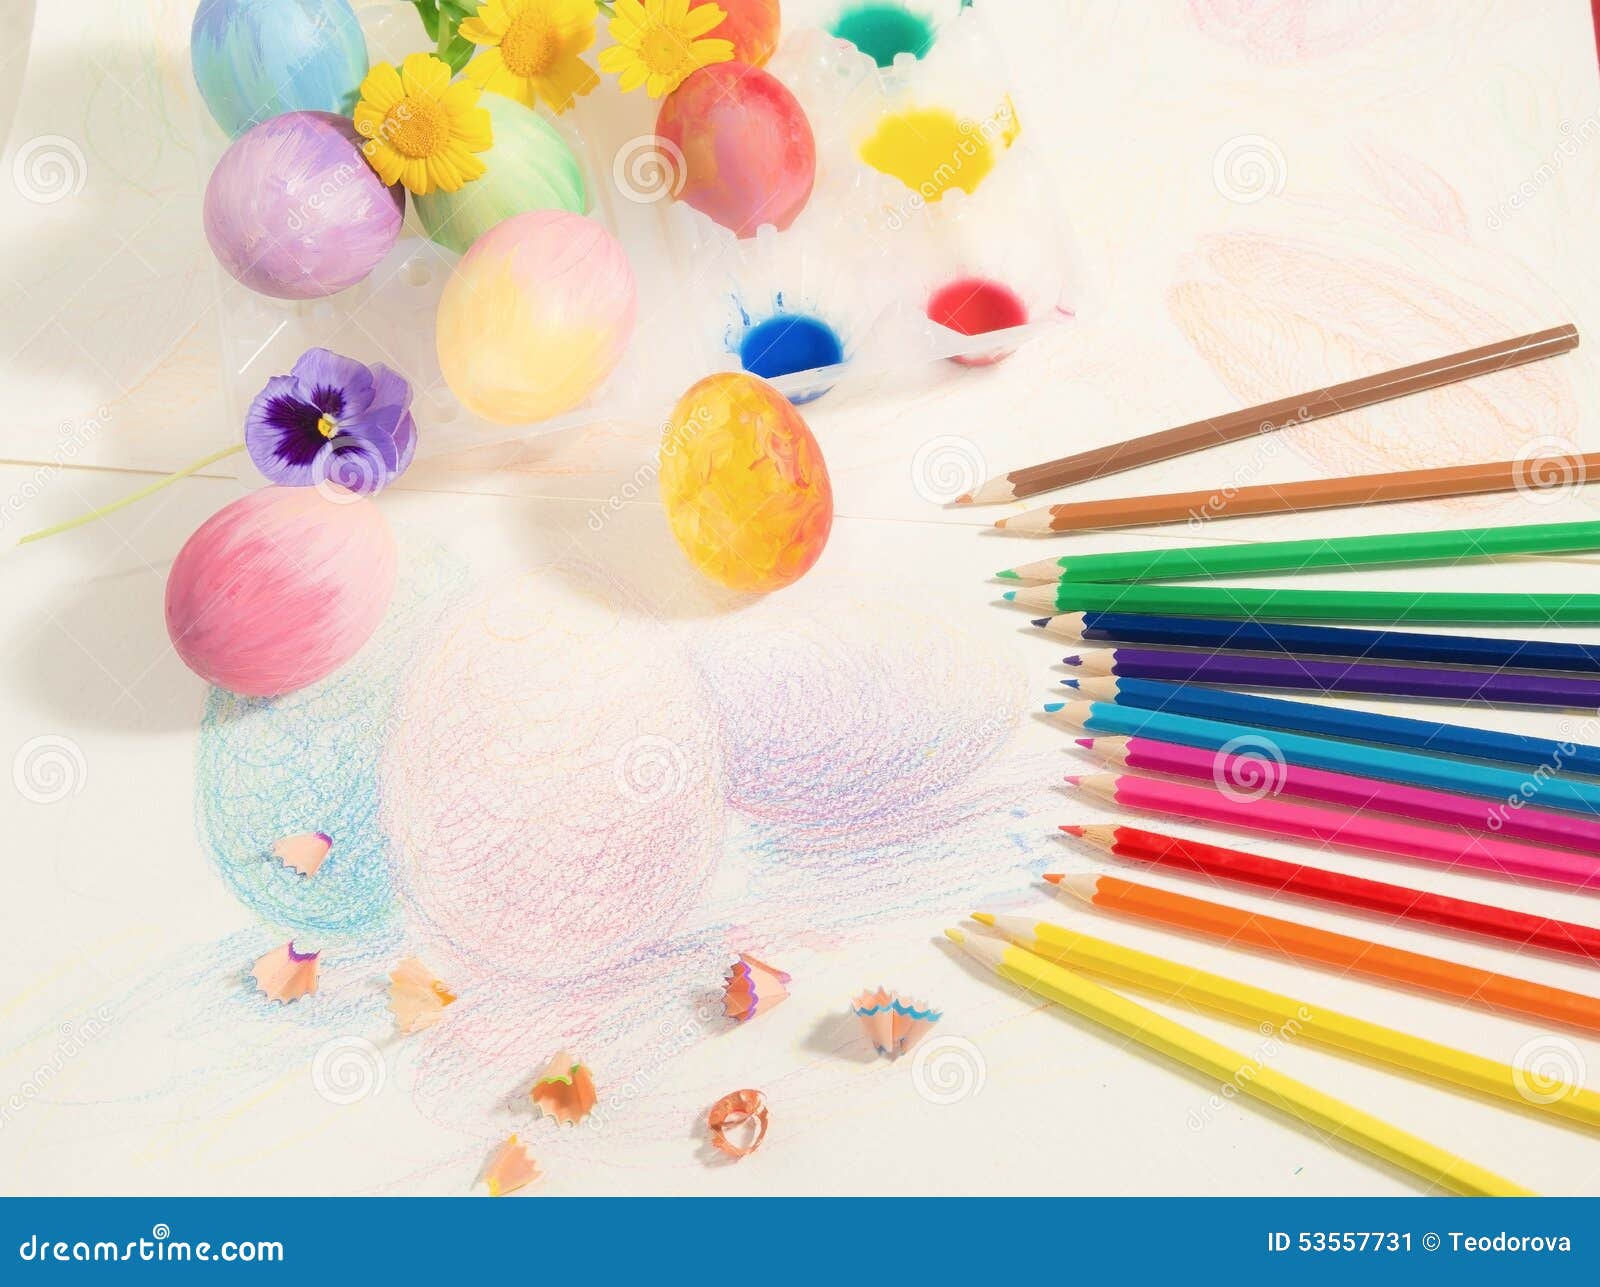 awesome simple colorato fiori mano matite molla pasqua with disegni colorati di pasqua with disegni di fiori colorati